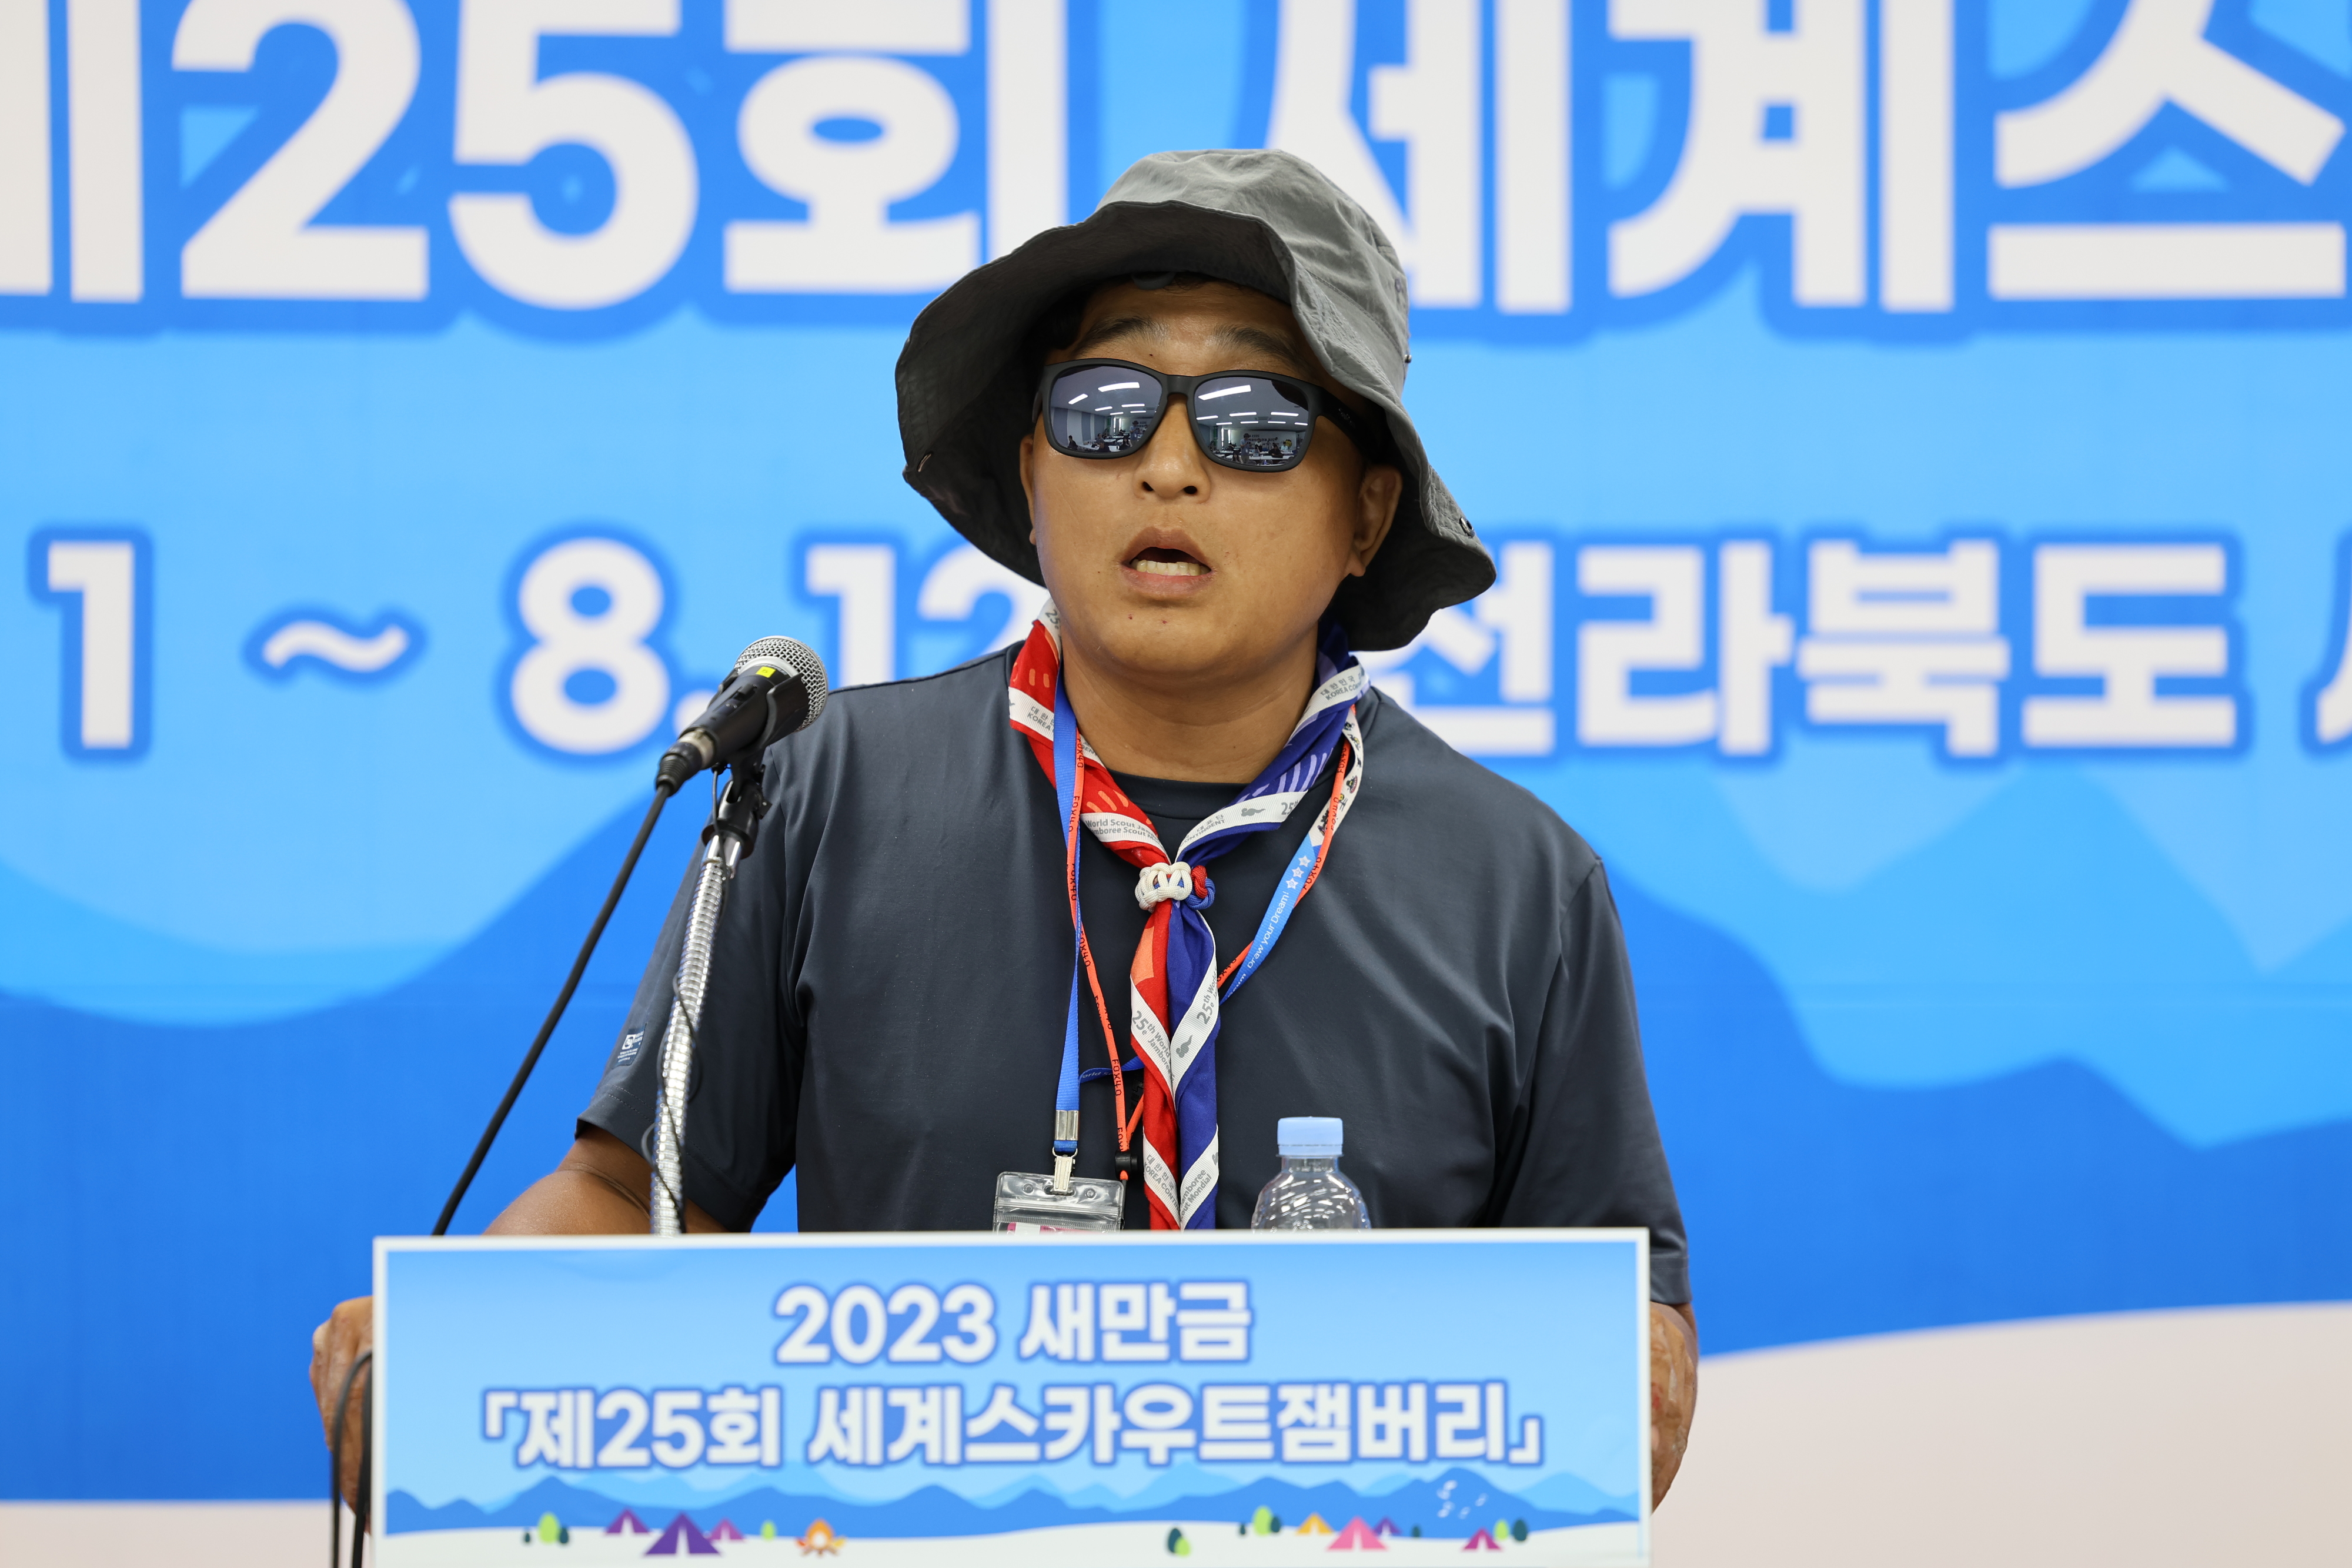 6일 2023 세계스카우트잼버리 프레스센터에서 한국스카우트연맹 전북연맹 지도자들이 기자회견을 열고 있다.  이 지도자들은 영내에서 성범죄가 발생해 퇴소하겠다고 밝혔다. 2023.8.6 연합뉴스